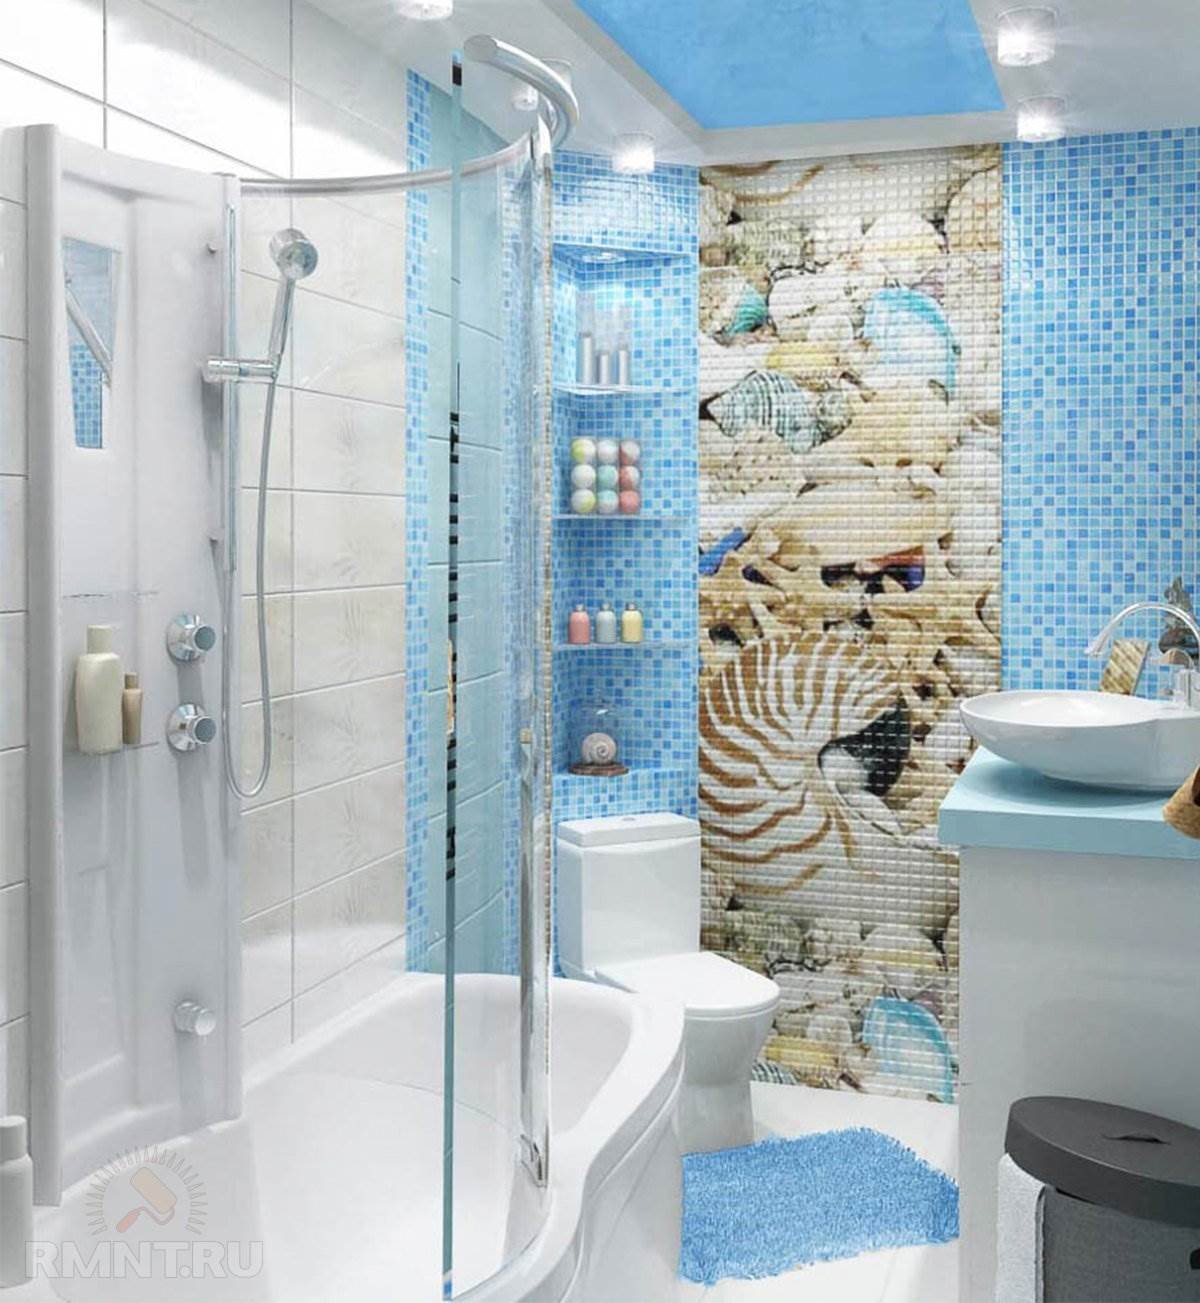 Ванная комната в морском стиле - варианты оформления ванной в морском стиле фото